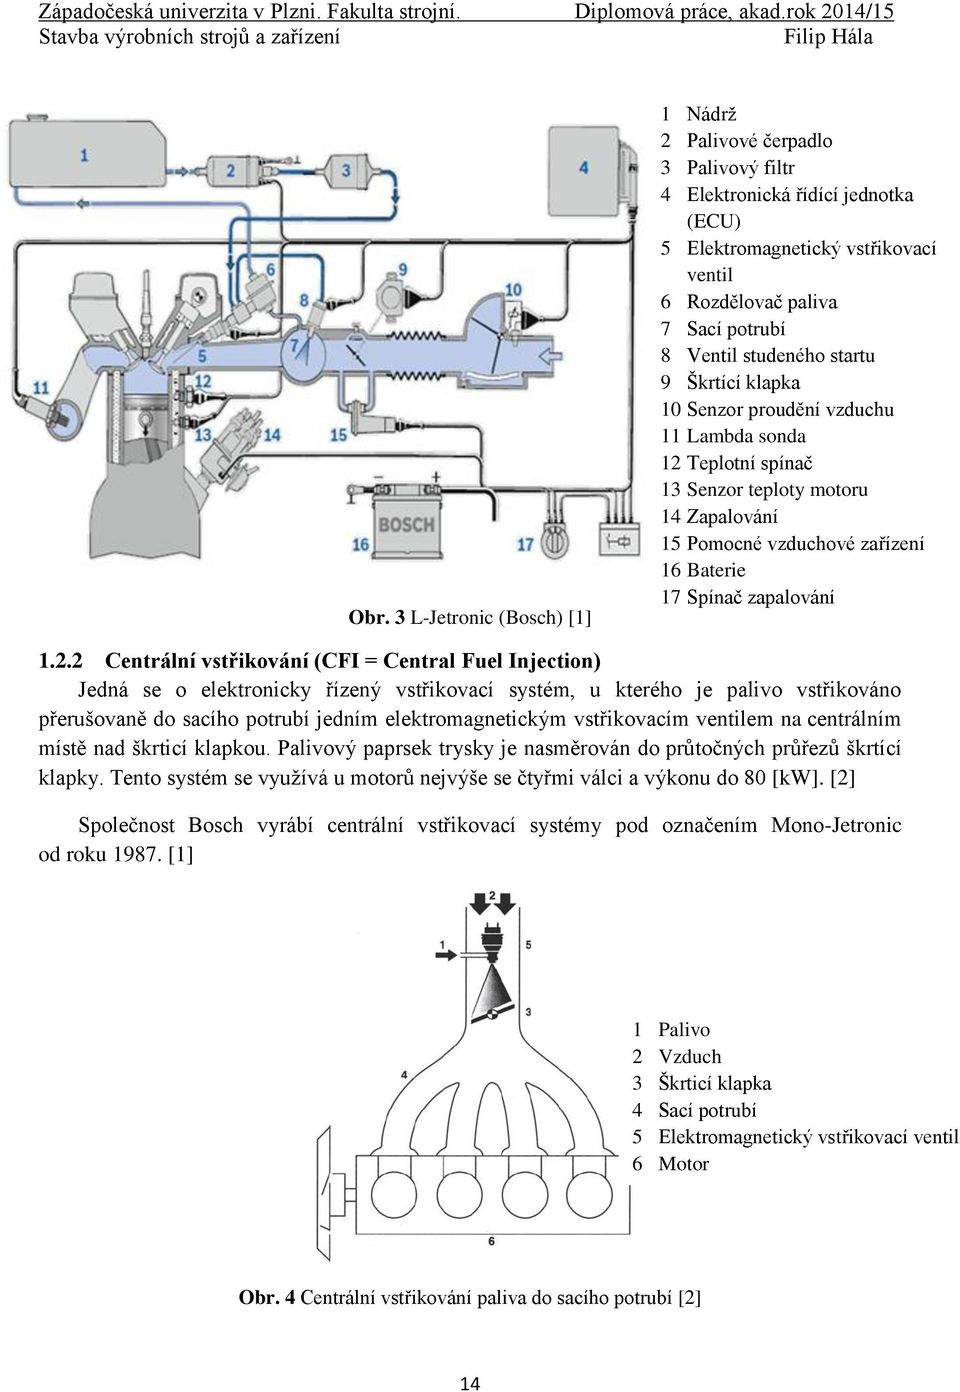 2.2 Centrální vstřikování (CFI = Central Fuel Injection) Jedná se o elektronicky řízený vstřikovací systém, u kterého je palivo vstřikováno přerušovaně do sacího potrubí jedním elektromagnetickým